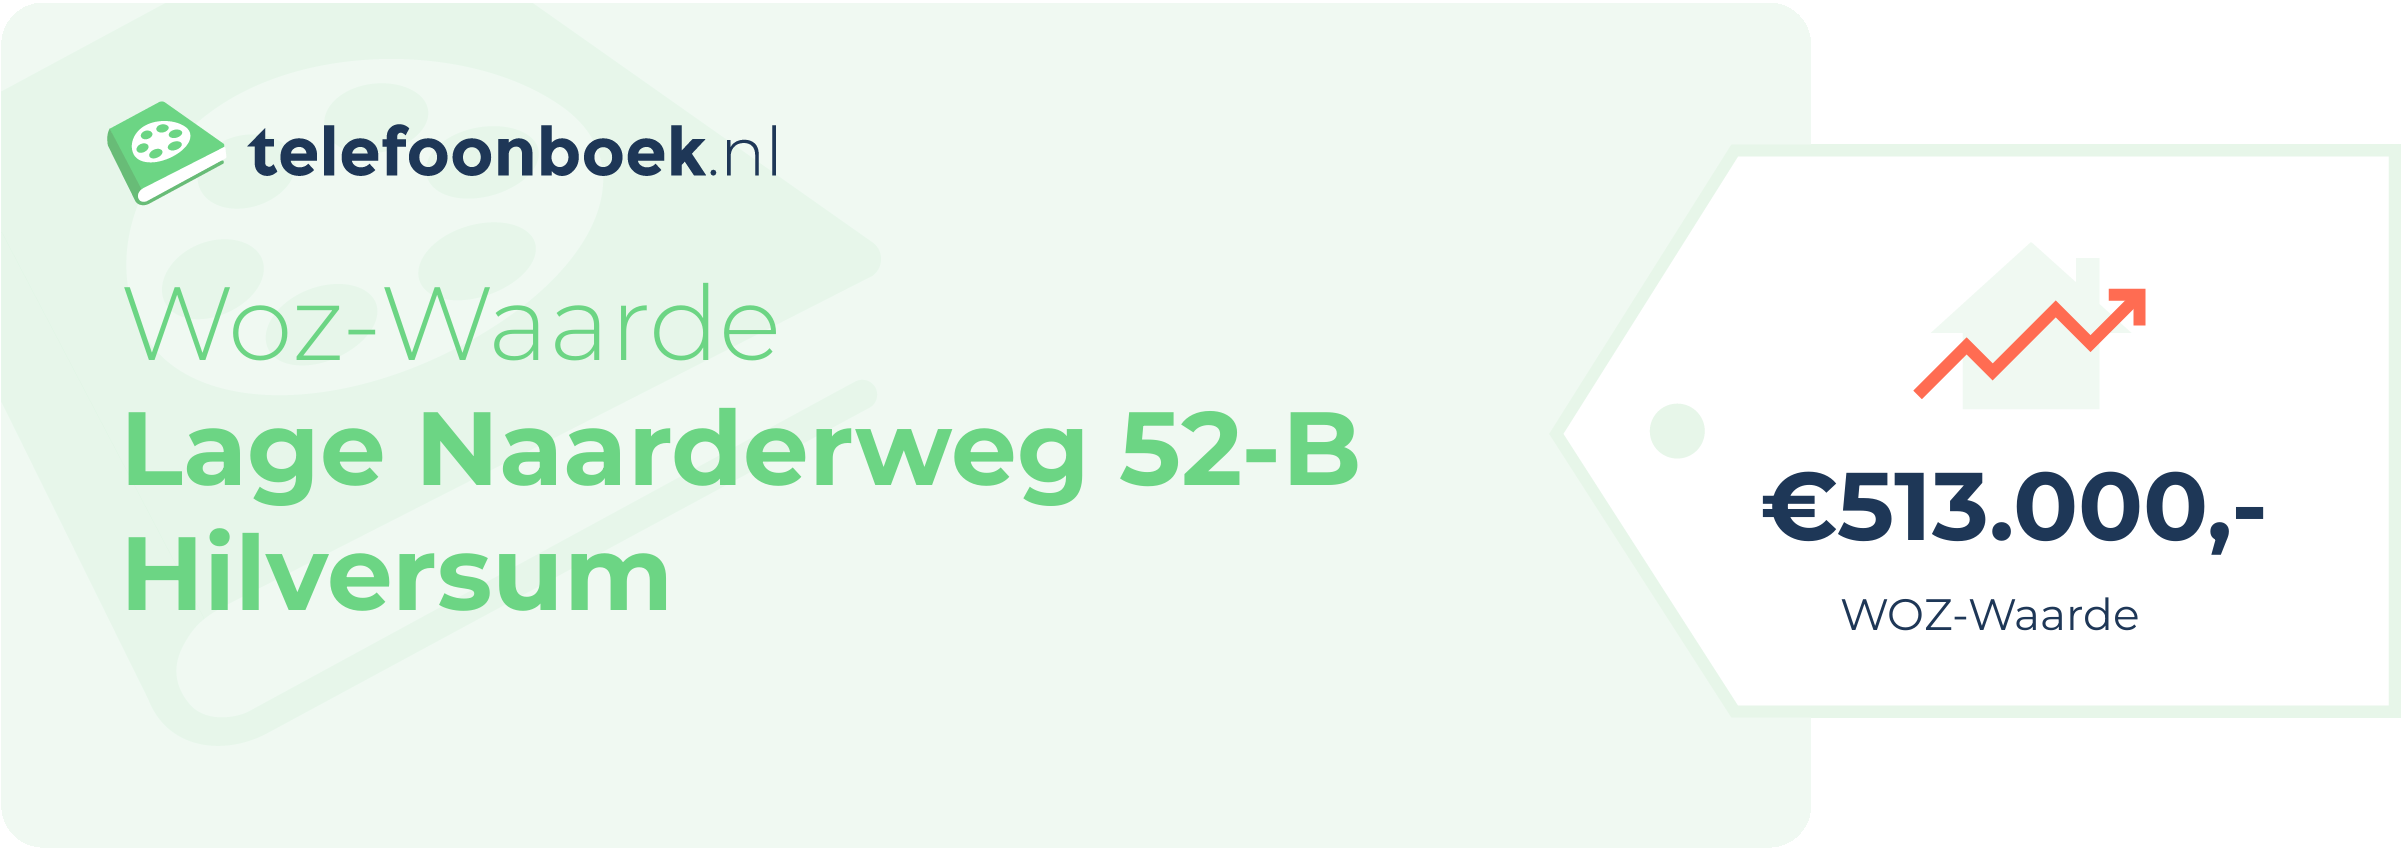 WOZ-waarde Lage Naarderweg 52-B Hilversum